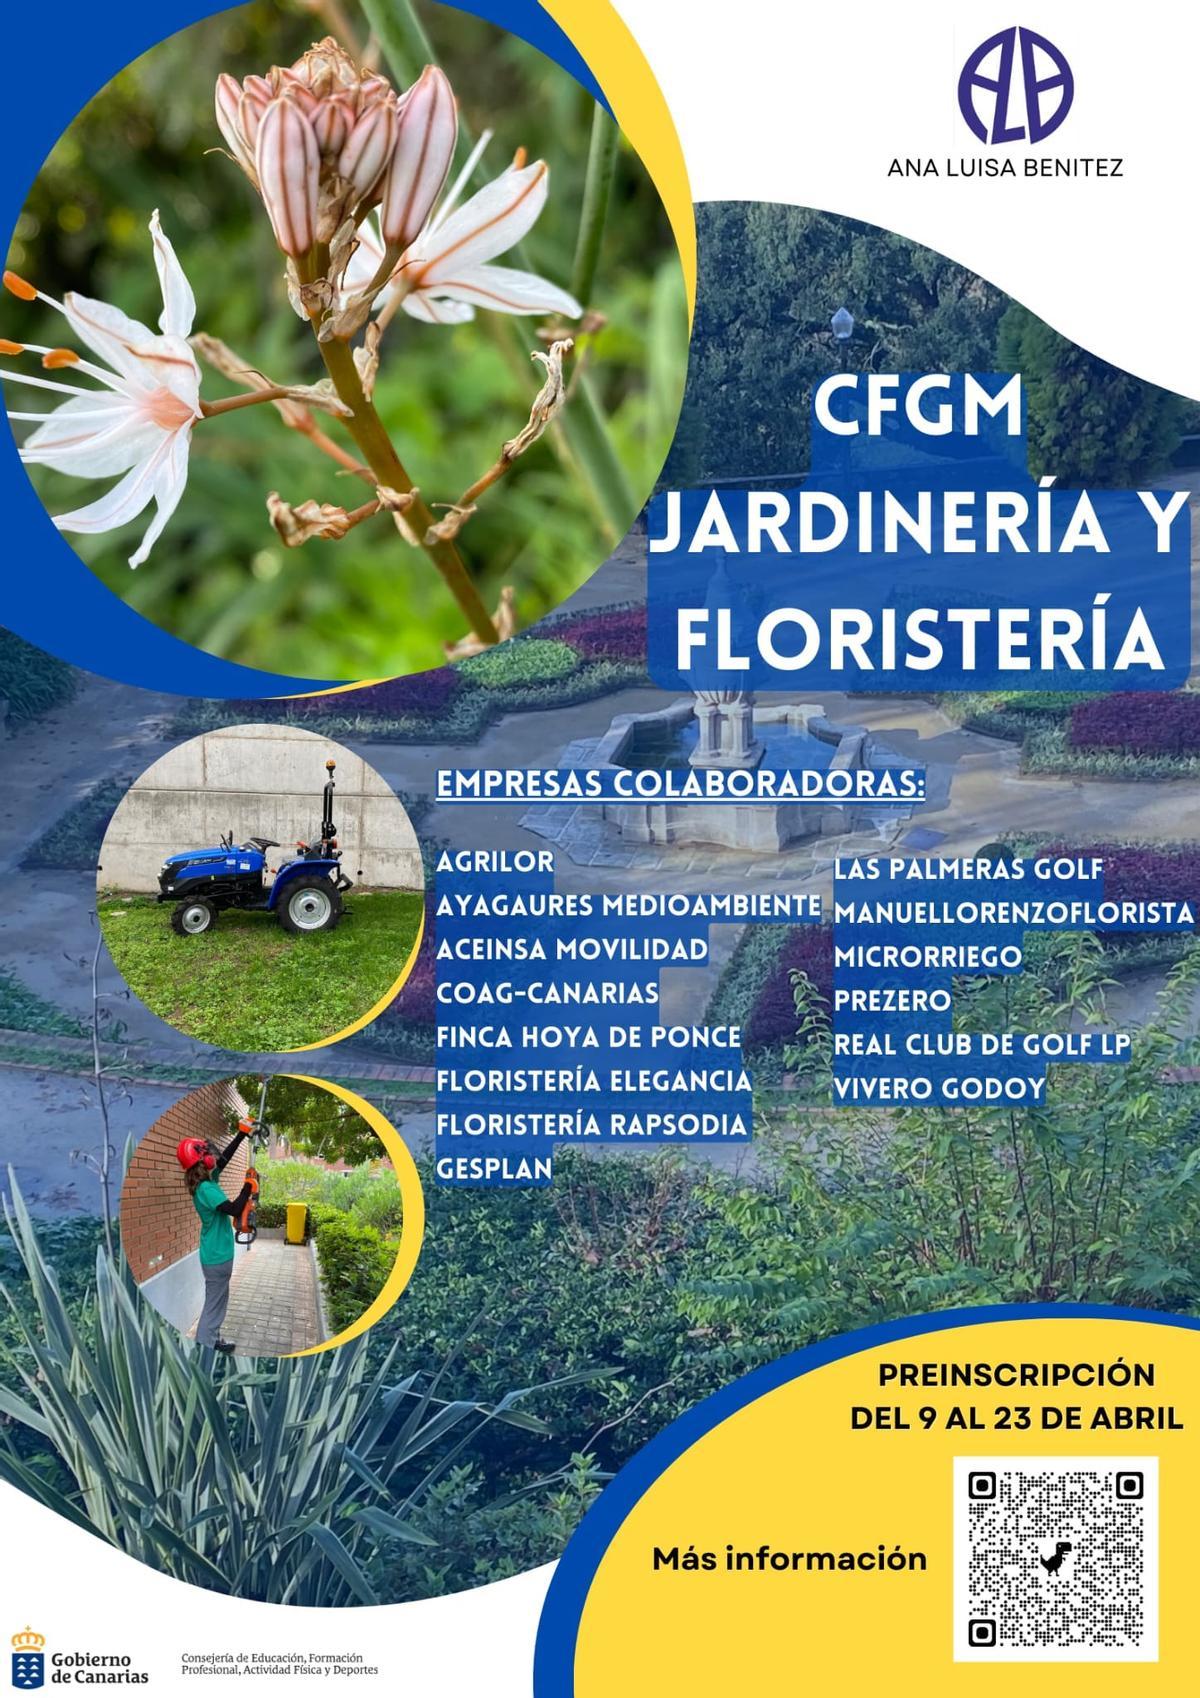 CFGM Jardinería y floristería